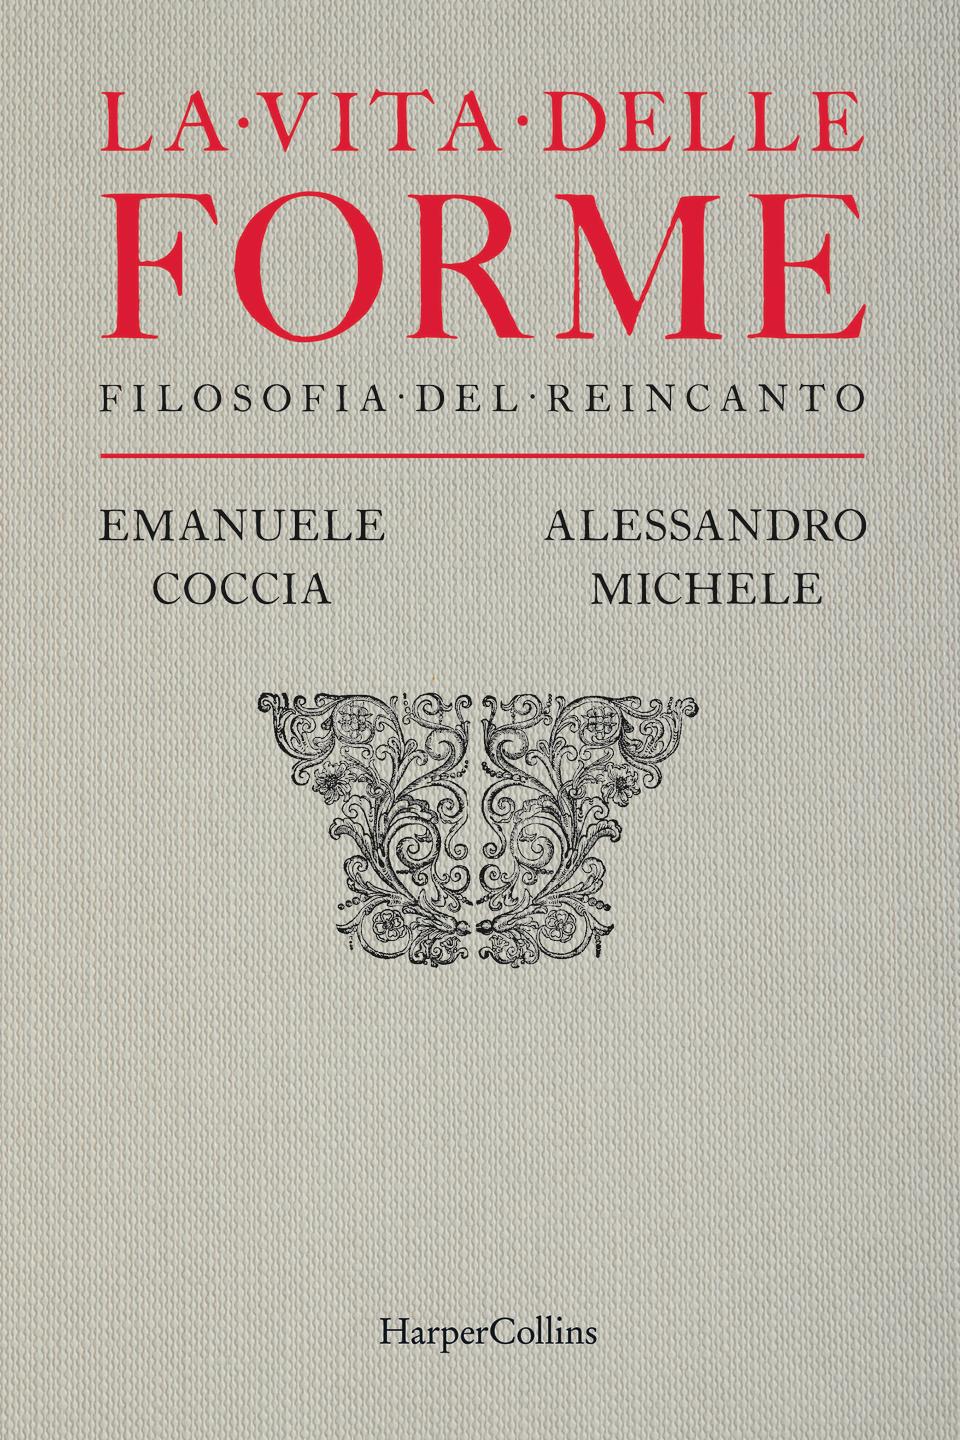 The cover of 'La Vita delle Forme'.